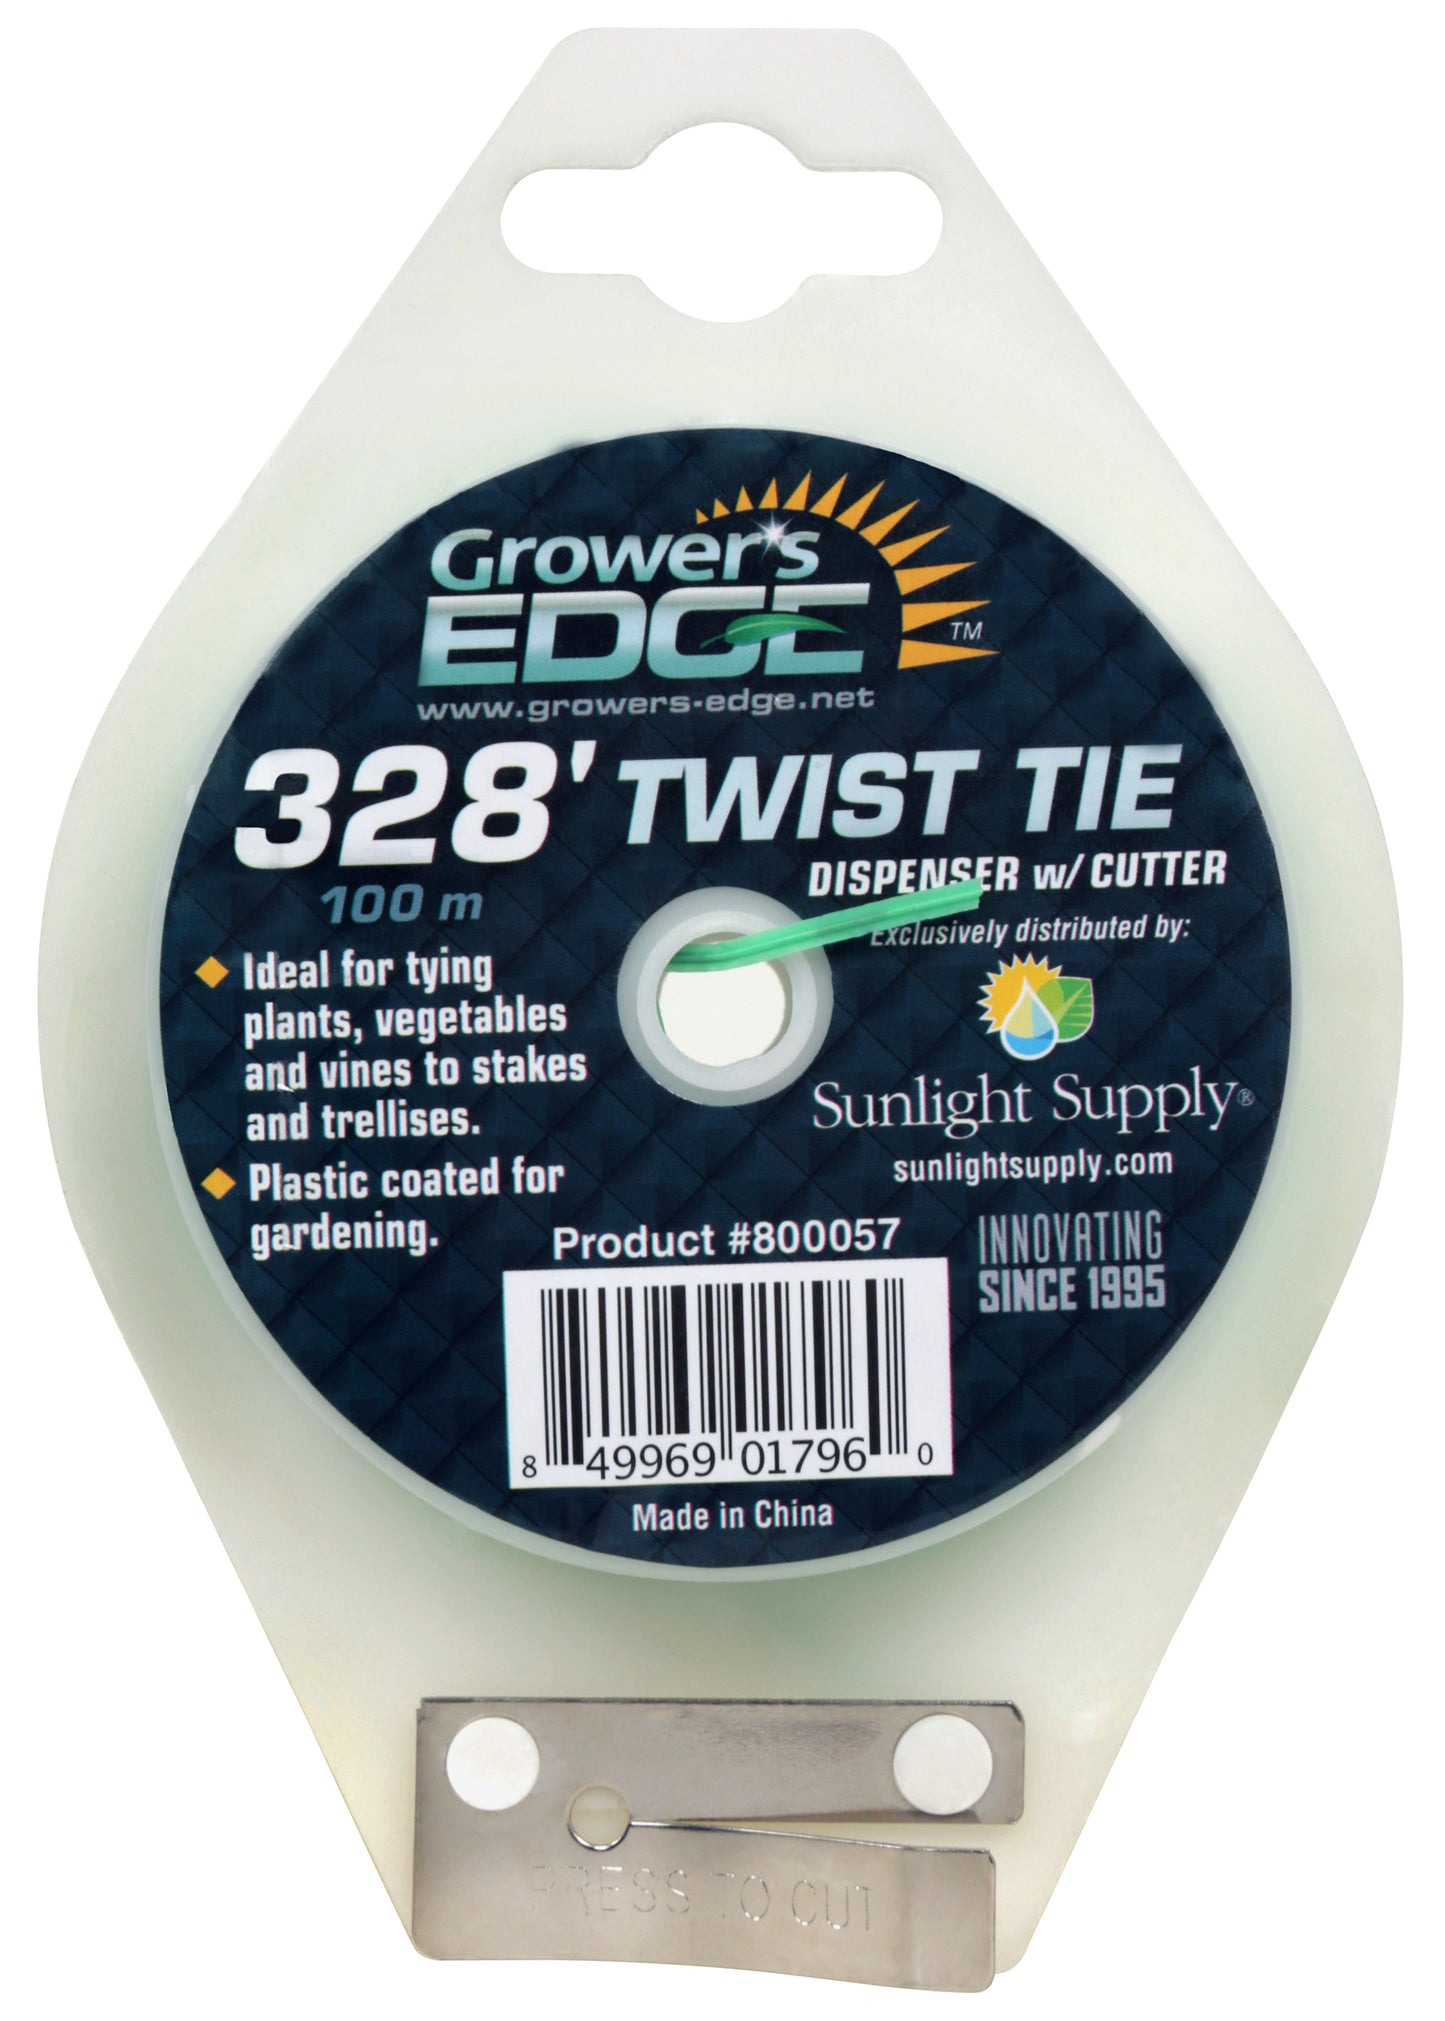 Grower's Edge® Green Twist Tie Dispenser with Cutter